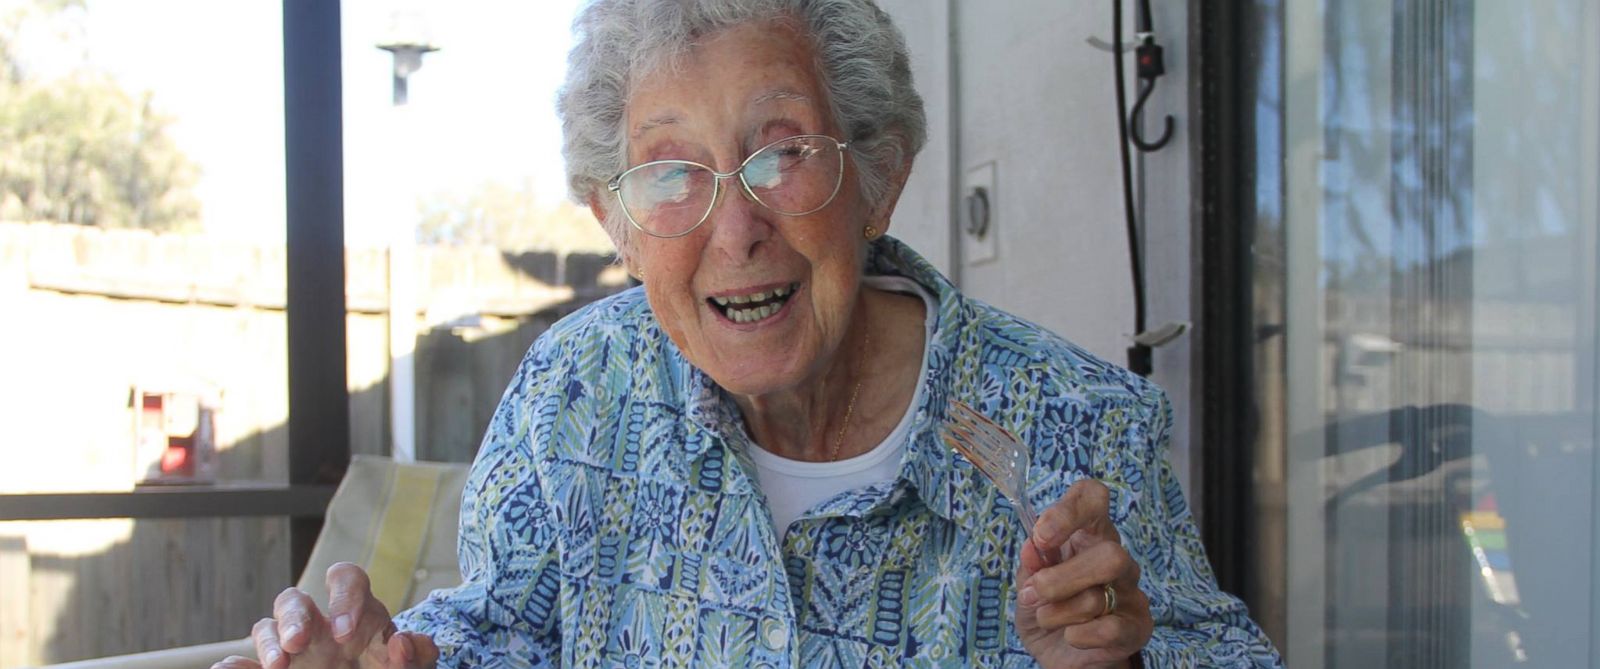 پایان یک مبارزه؛ پیرزن ۹۱ ساله ای که الهام بخش بسیاری از کاربران اینترنت بود درگذشت روزیاتو 